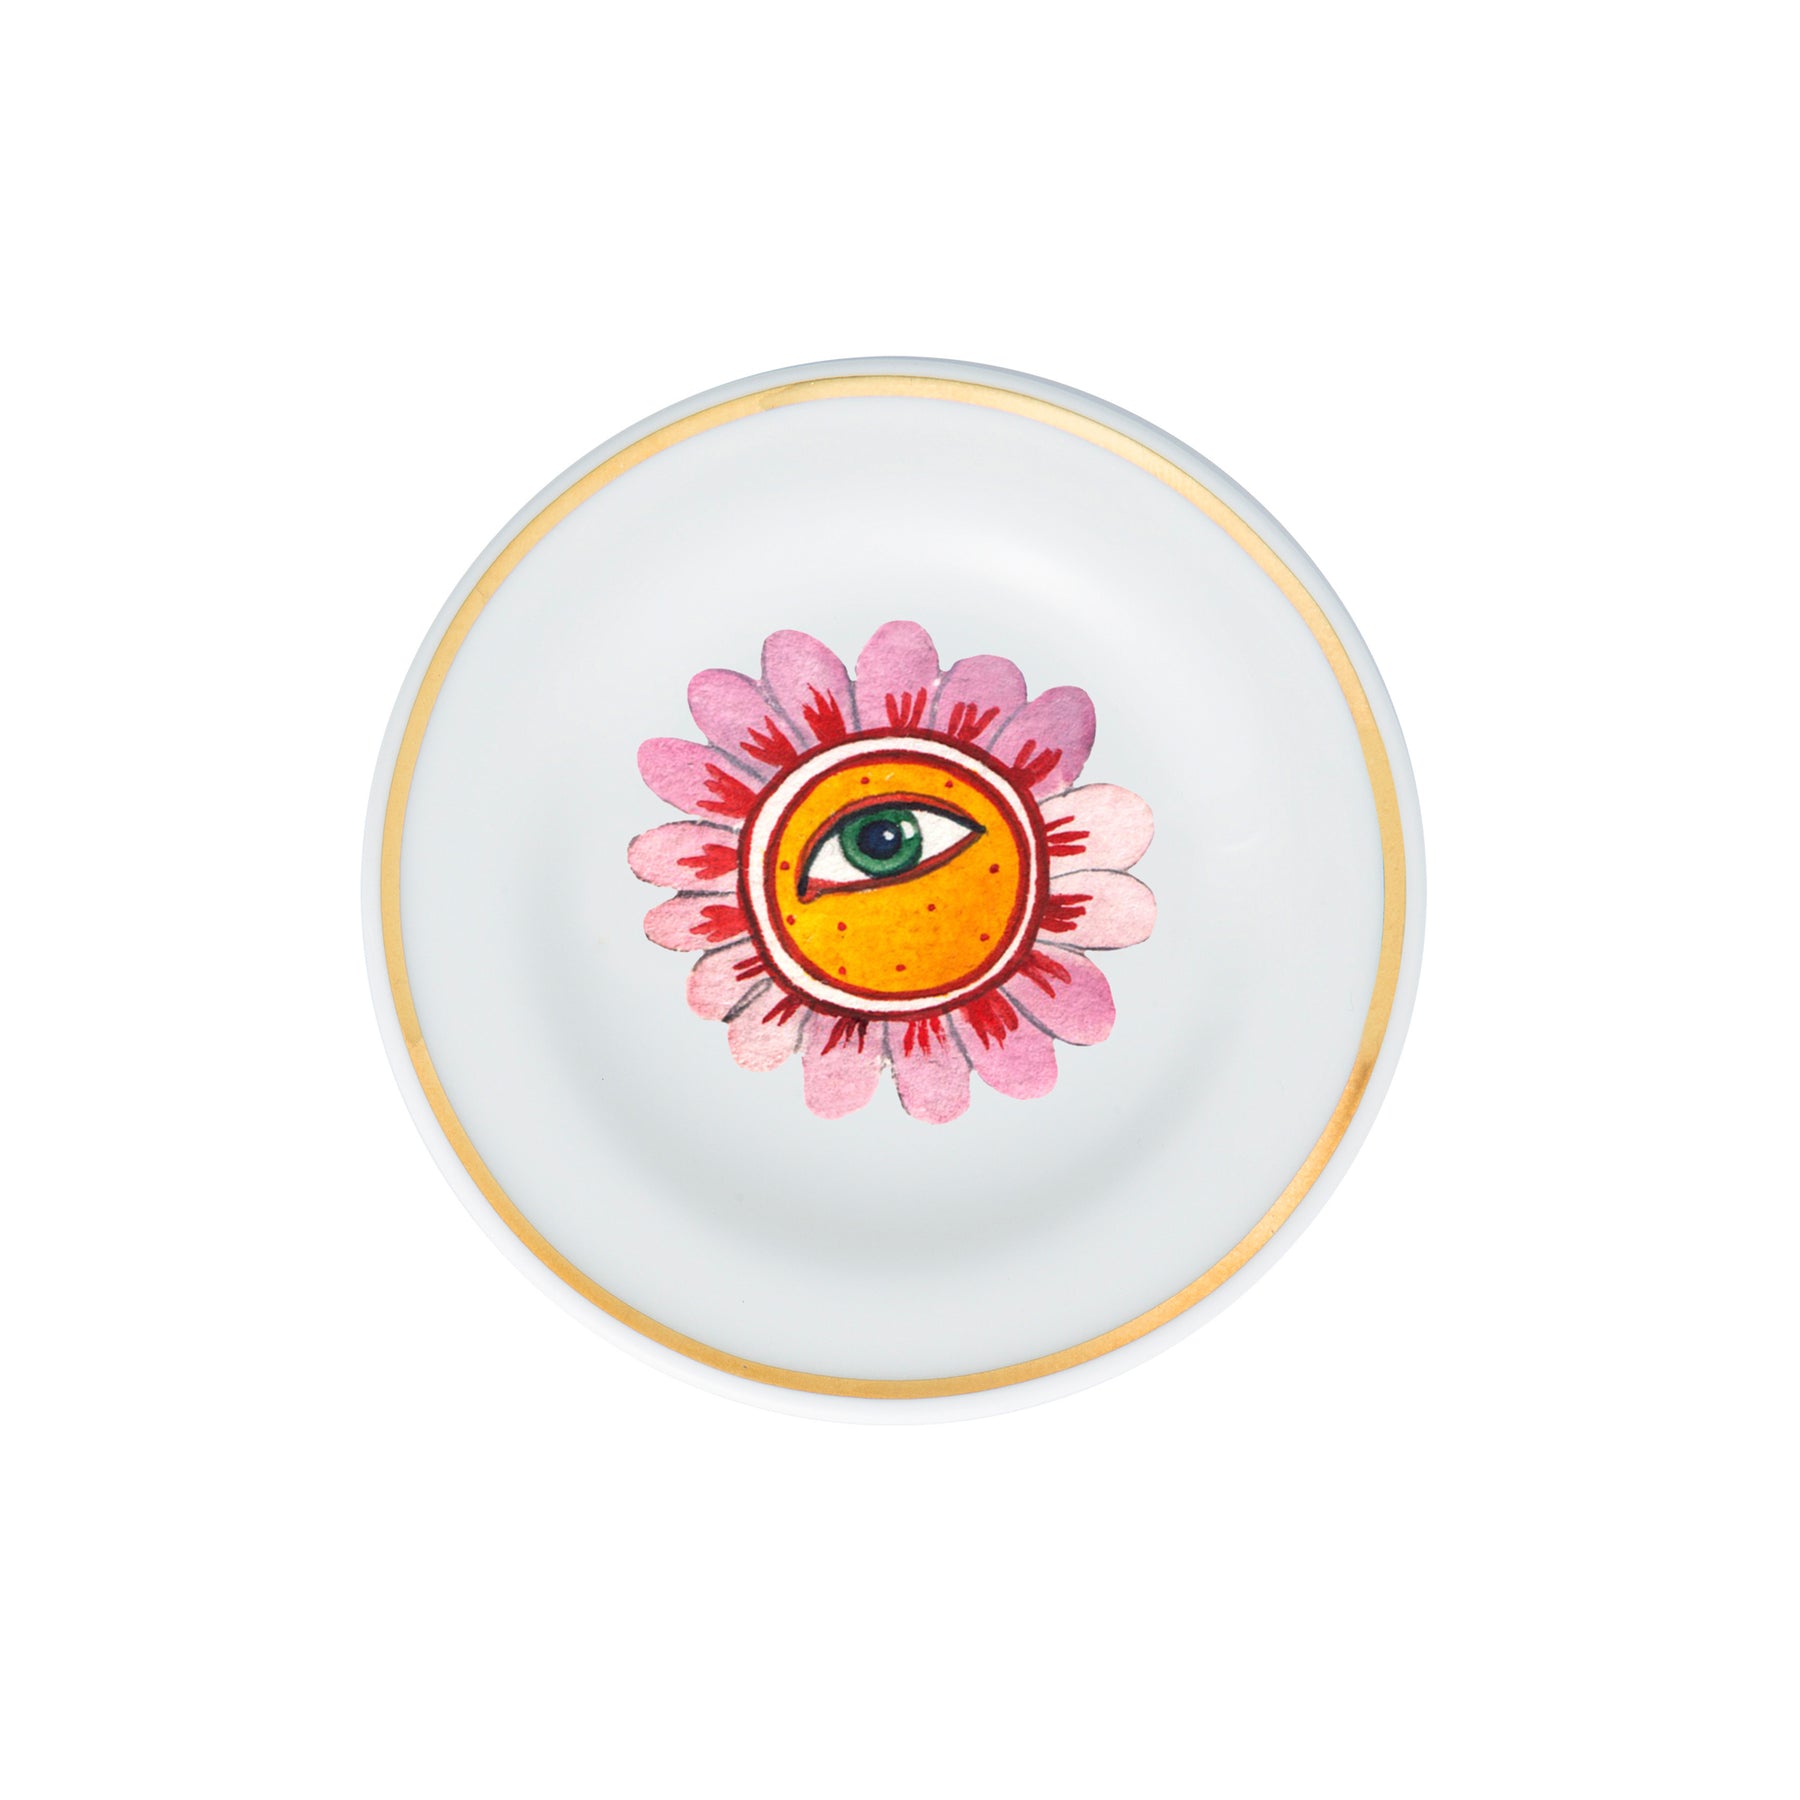 FLOWER EYE Porcelain Plate. 10 cm